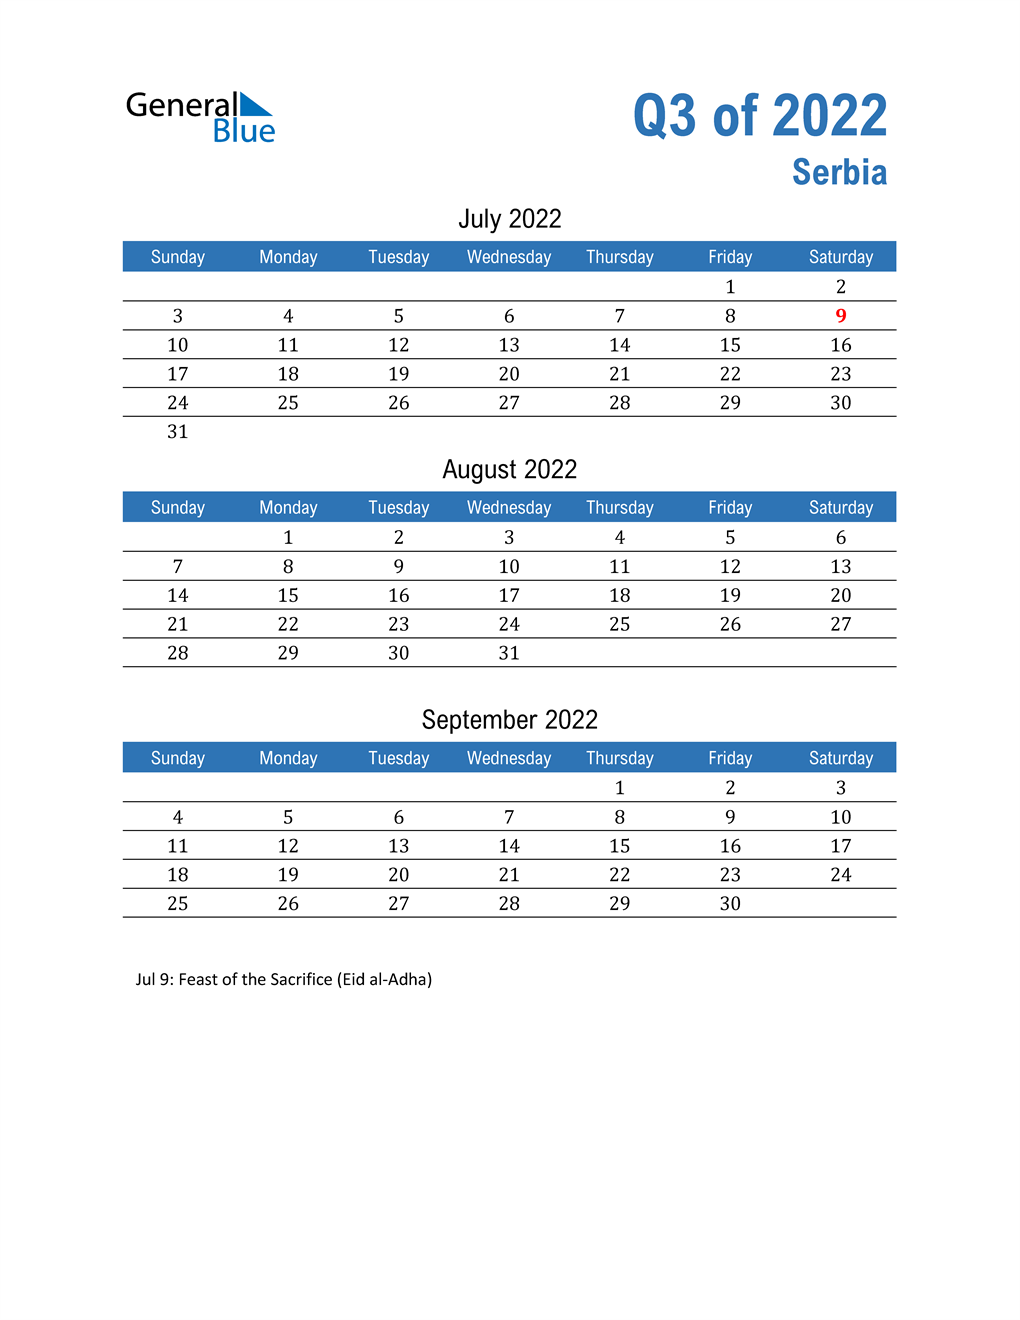  Serbia 2022 Quarterly Calendar 